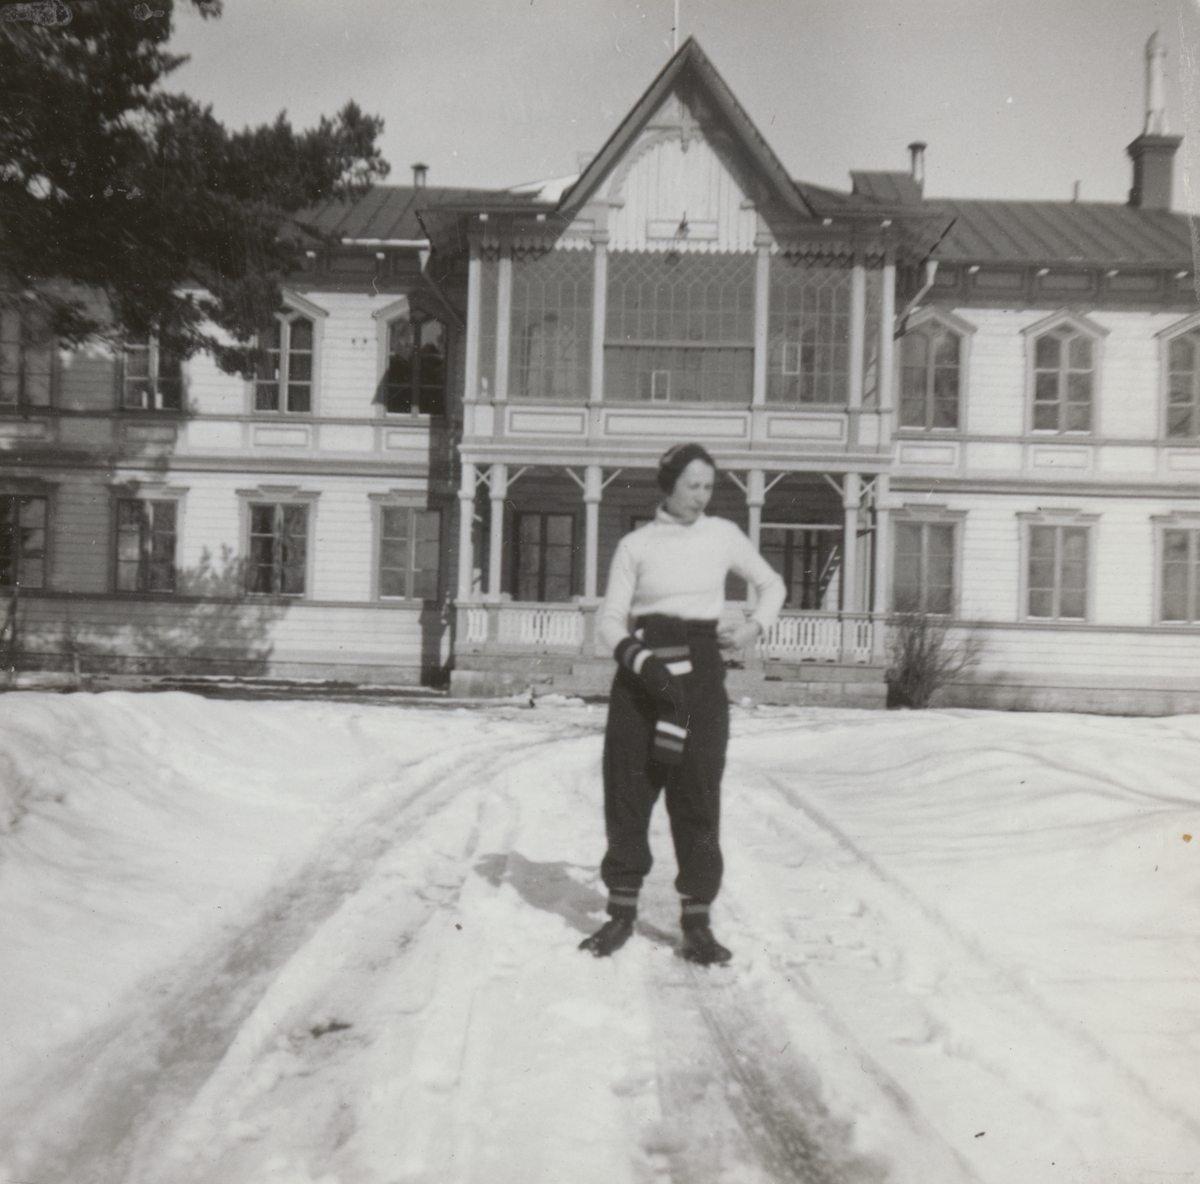 Porträttfoto av Anna Linderstam i skidklädsel utanför byggnad, vintertid, cirka 1925.

Text vid foto: "'Annika gillar 'Östran'"